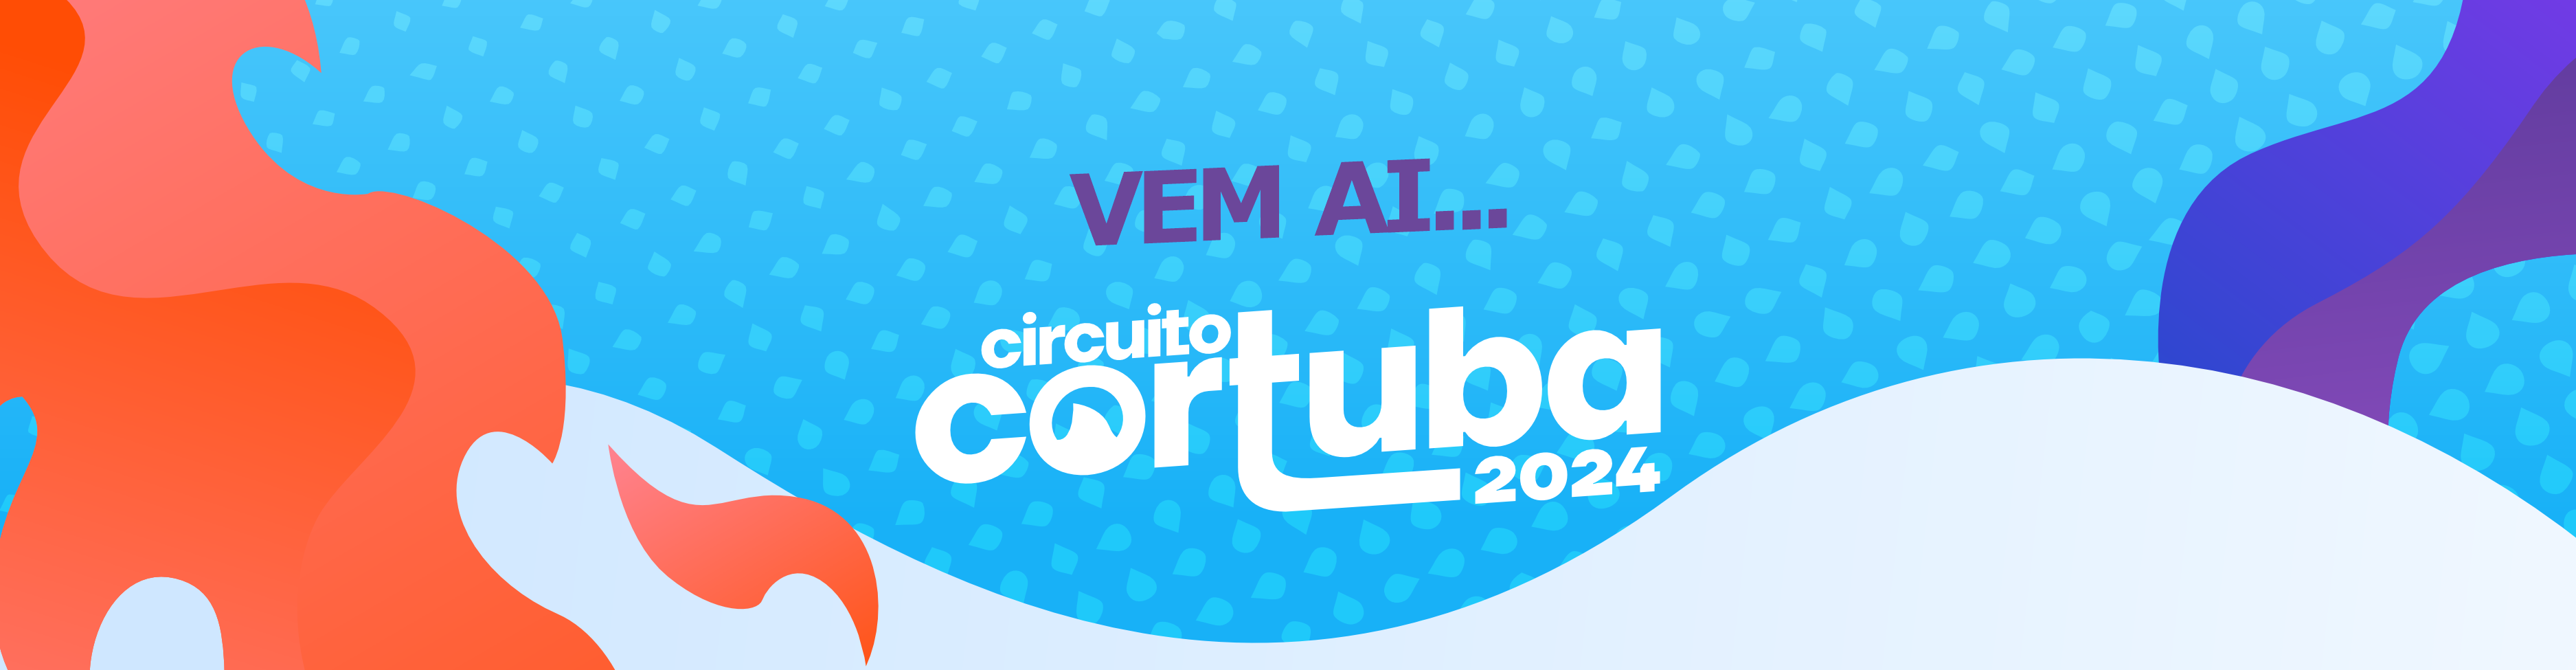 Banner - Circuito Cortuba 2024